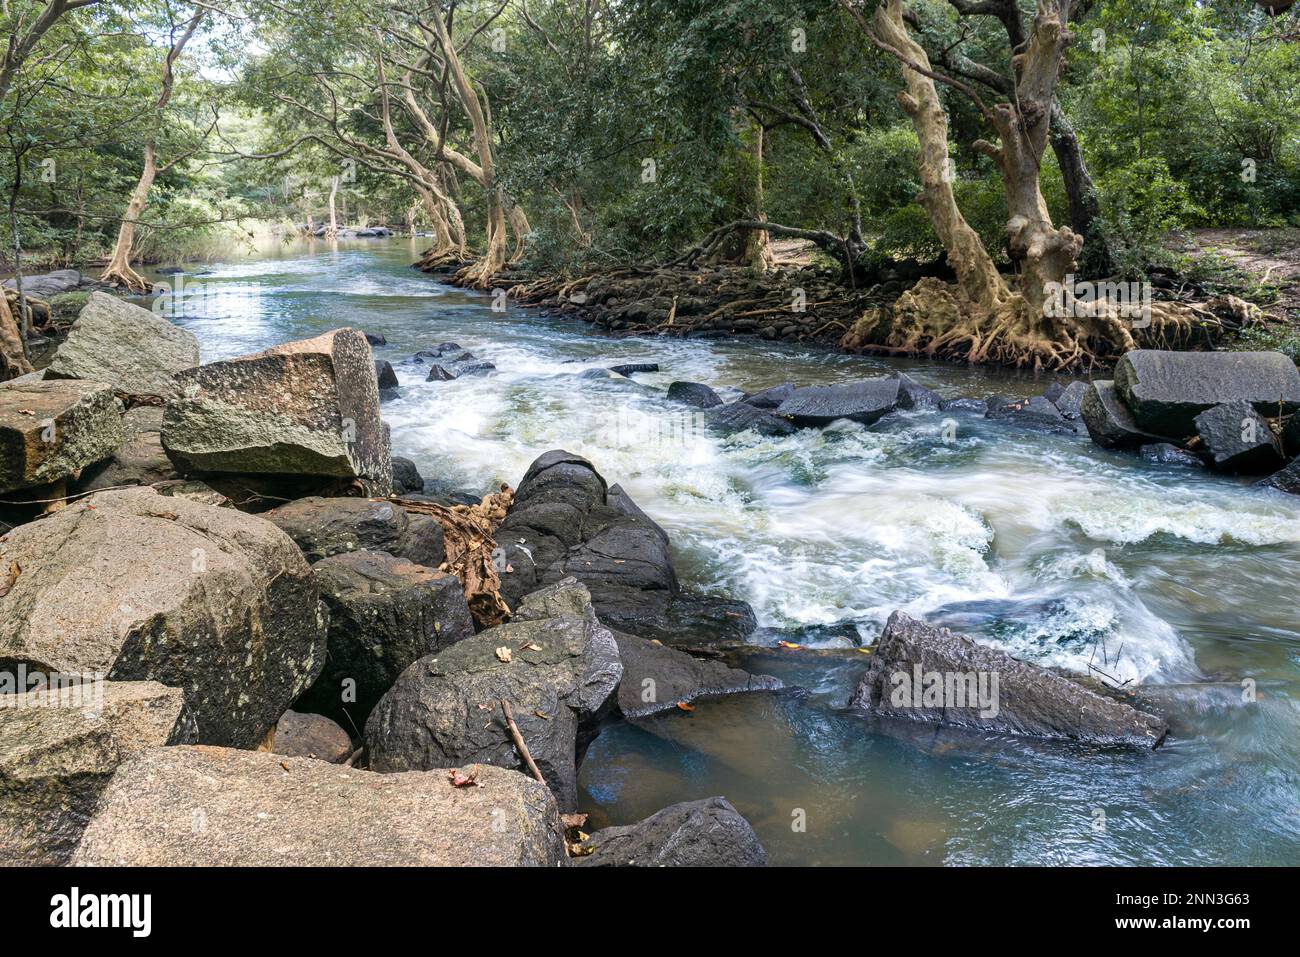 Un paysage paisible de jungle avec une petite rivière serpentant à travers les rochers en premier plan, créant une scène paisible et naturelle. Banque D'Images